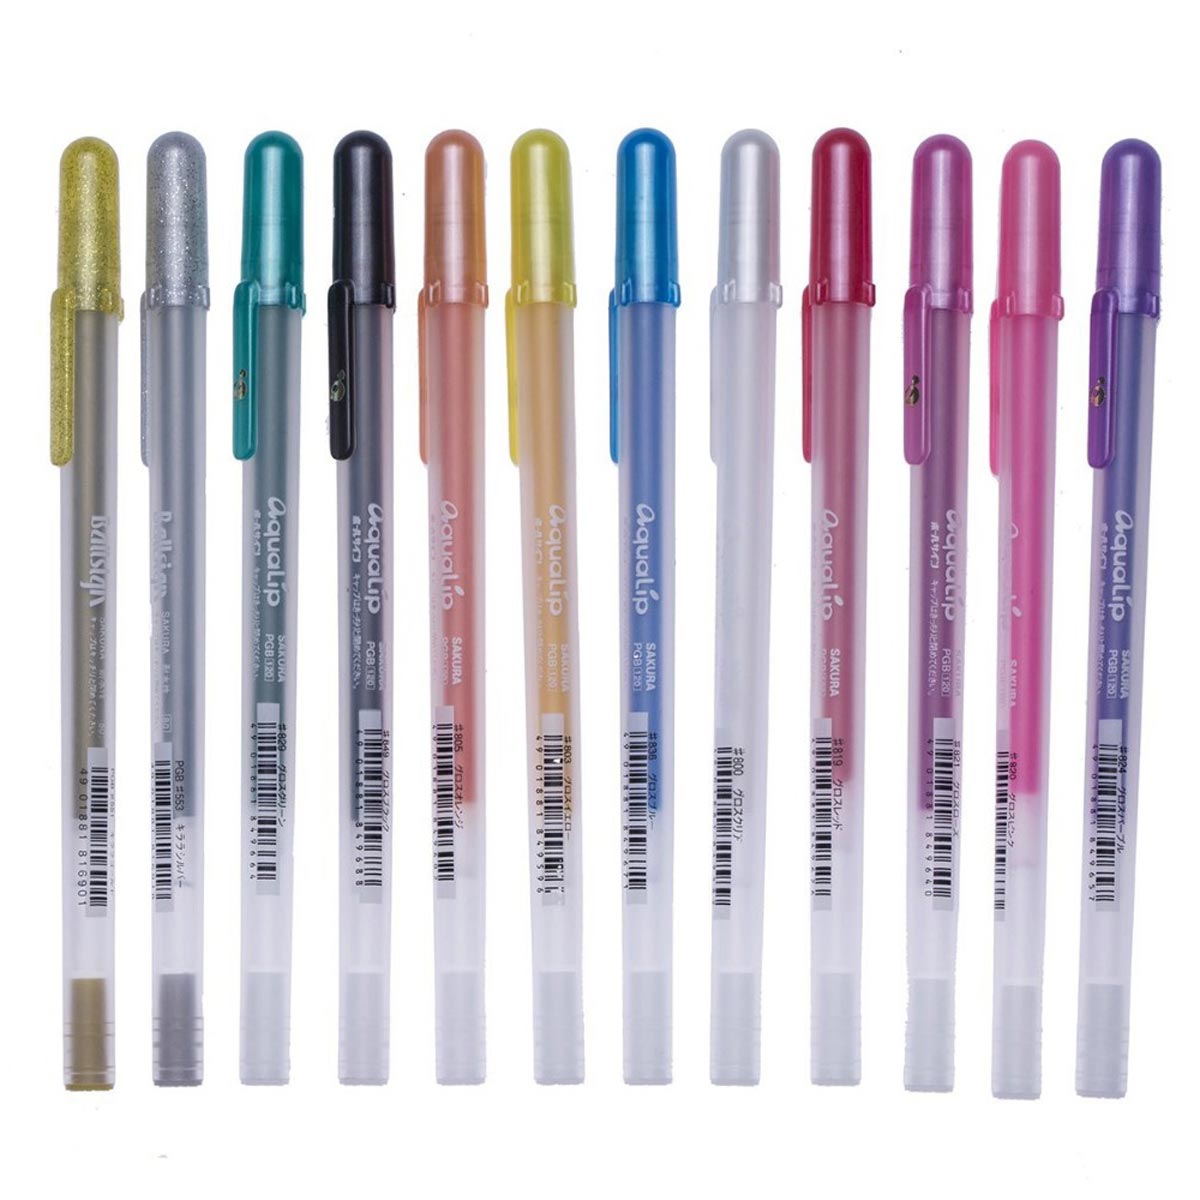 Gelly Roll Metallic Gel Pens